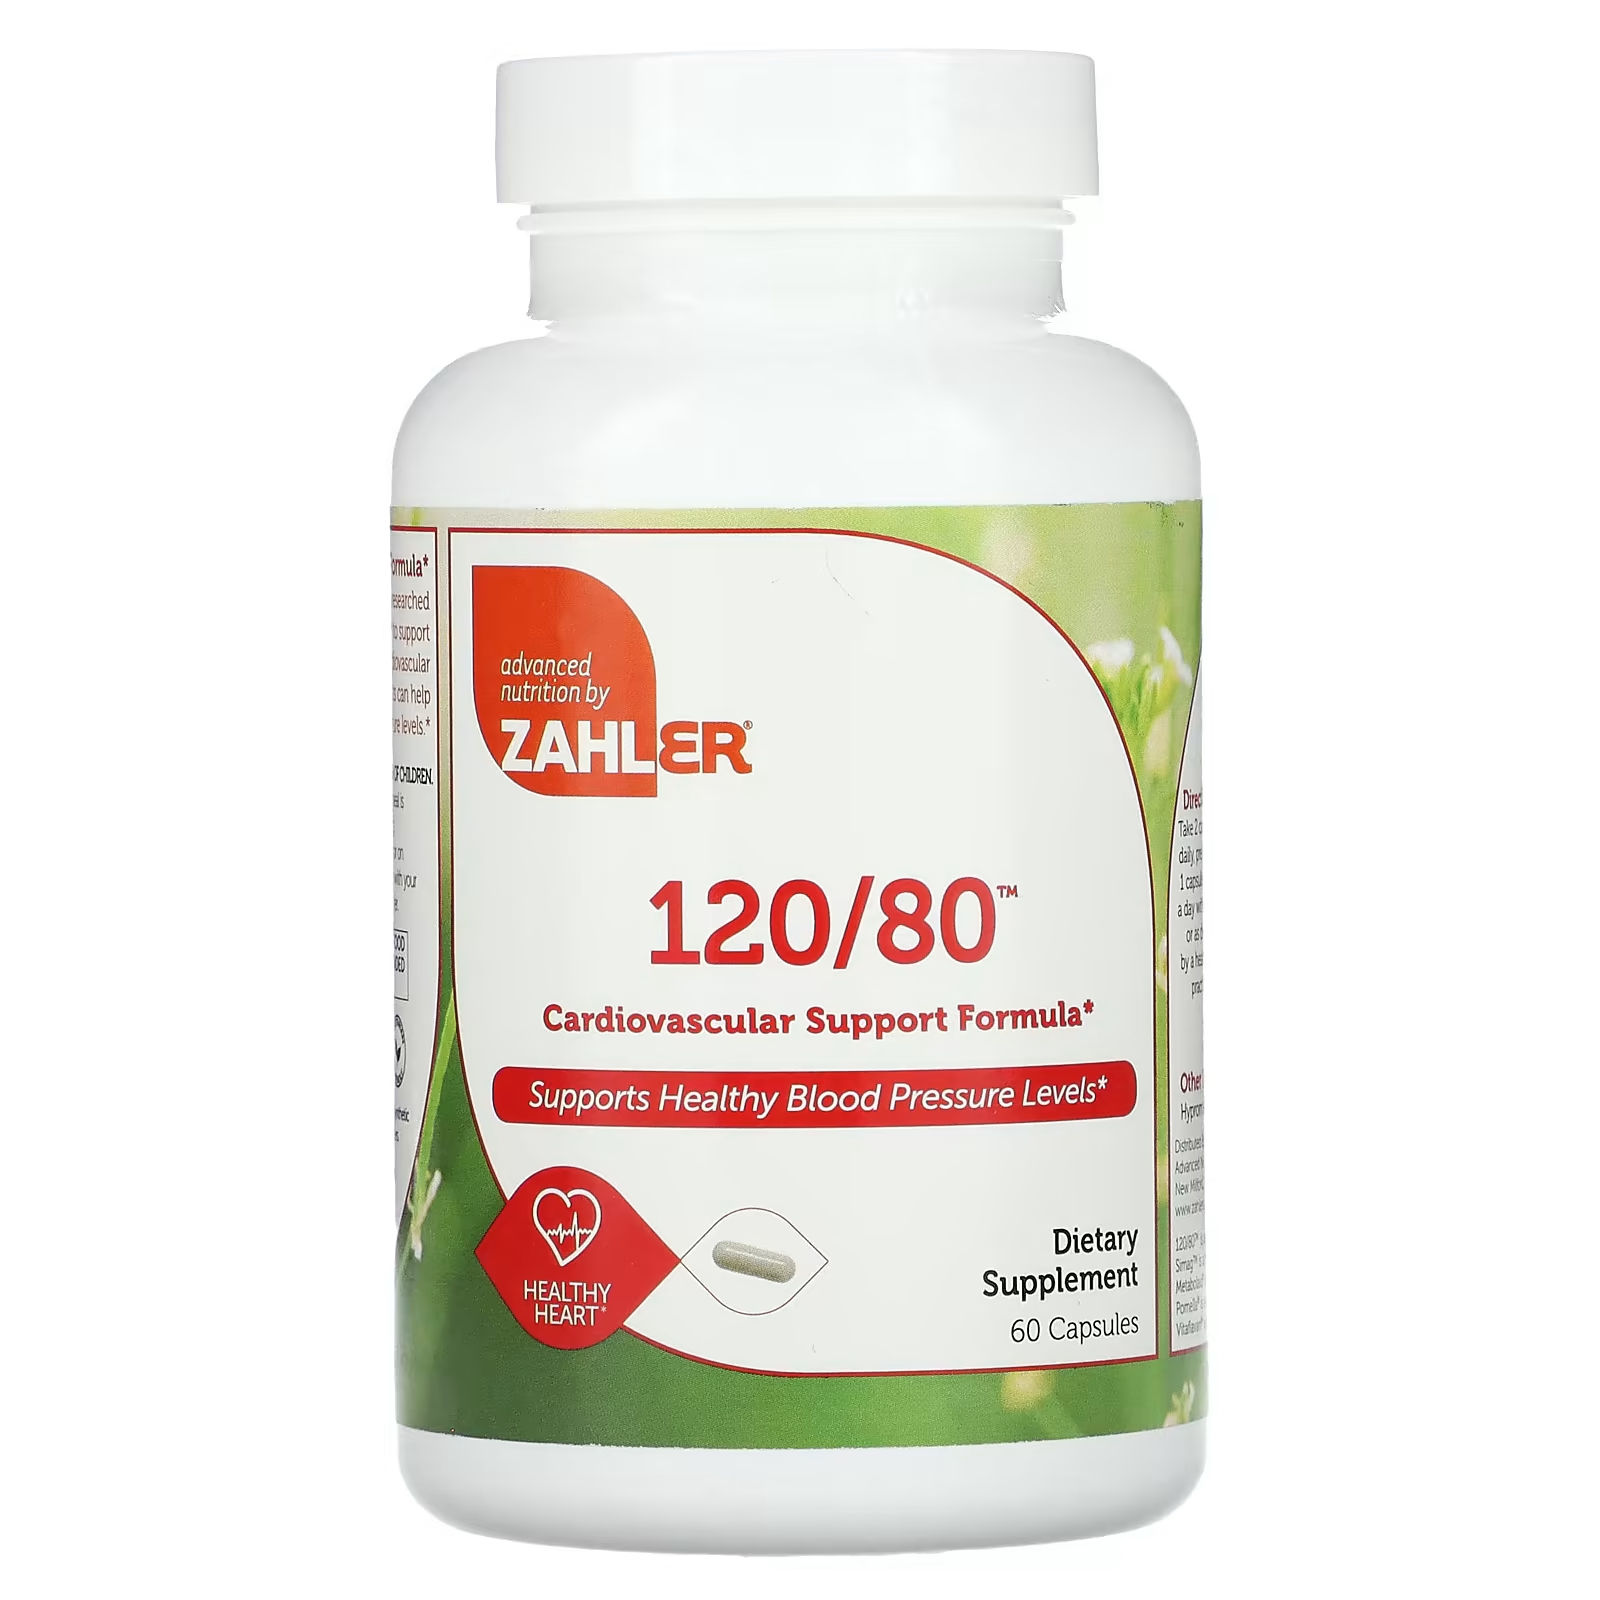 Пищевая добавка Zahler 120/80 формула поддержки сердечно-сосудистой системы, 60 капсул пищевая добавка zahler 120 80 формула поддержки сердечно сосудистой системы 60 капсул